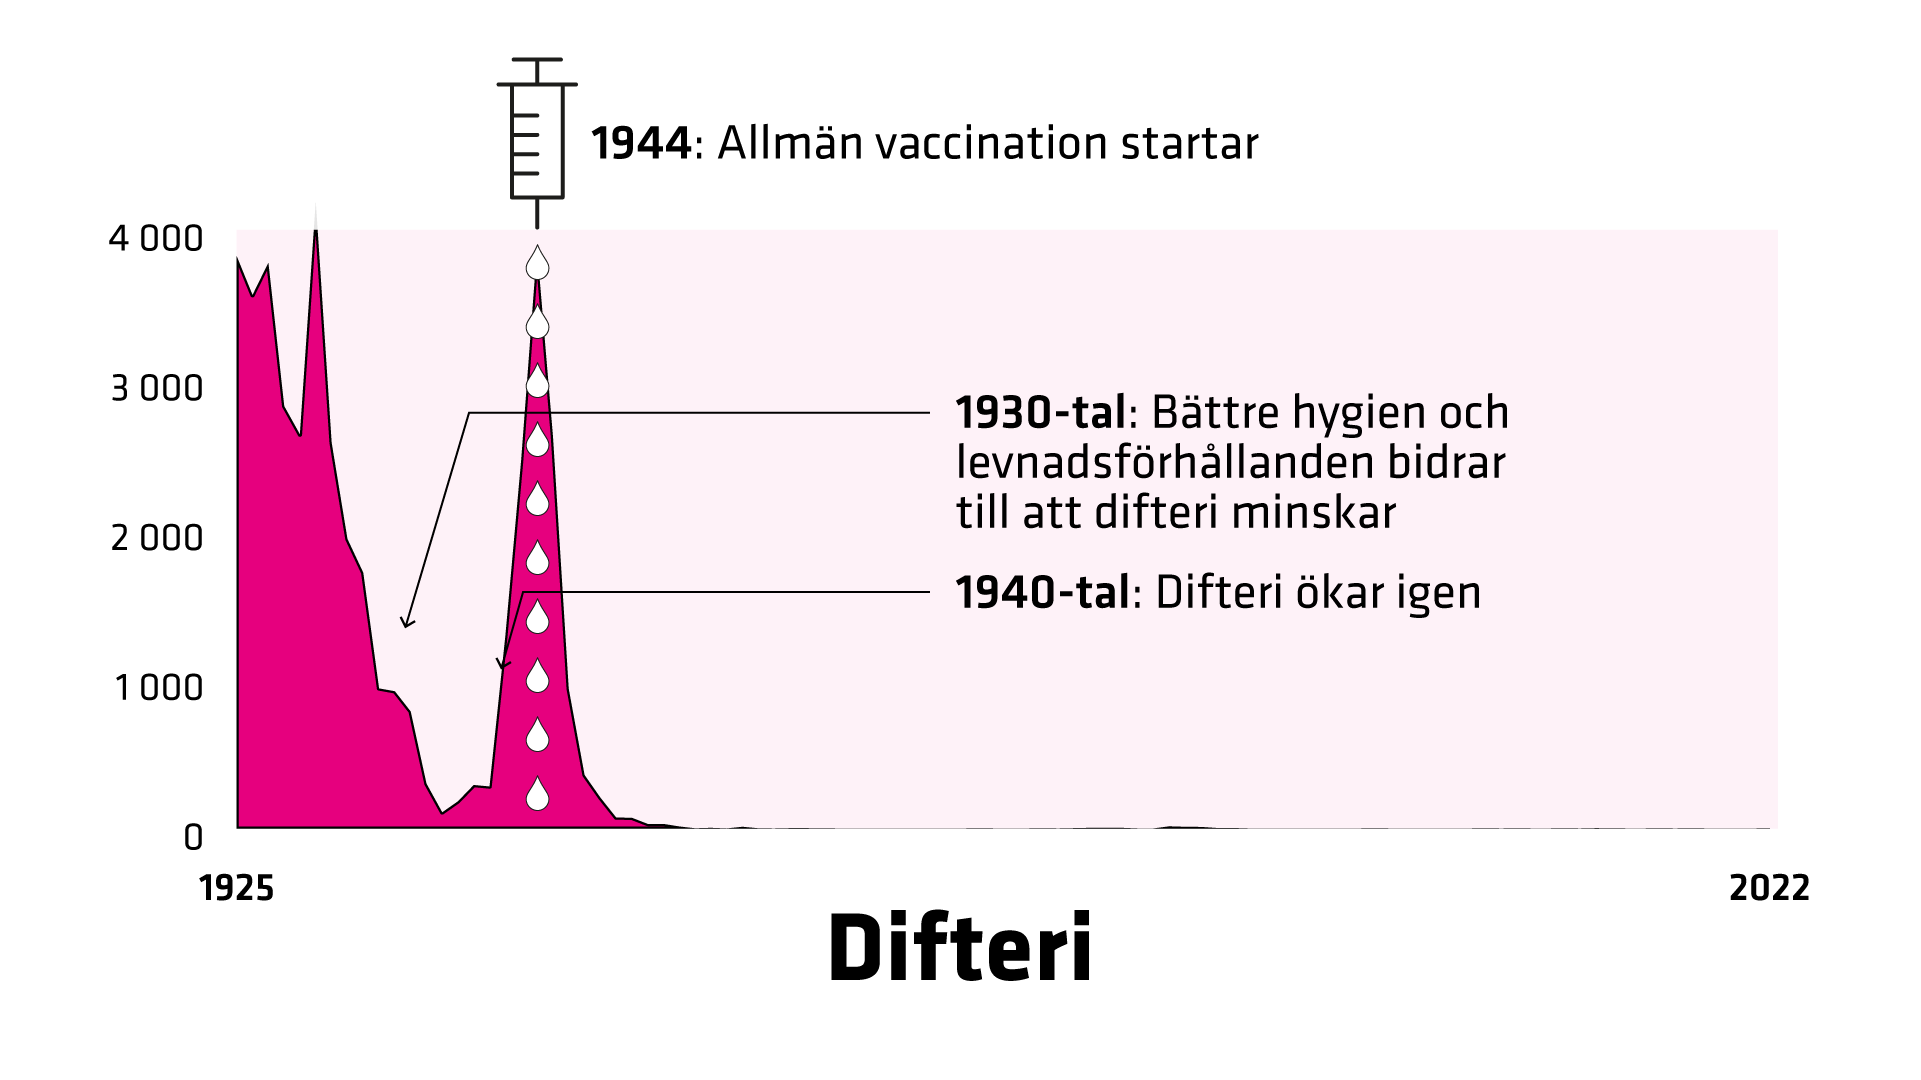 Difteri. Antal fall i Sverige 1925–2022. 1925 registrerades 3 820 fall.  1944 startar allmän vaccination antalet fall är 3 868. Enstaka fall rapporteras varje år fram till 2020.